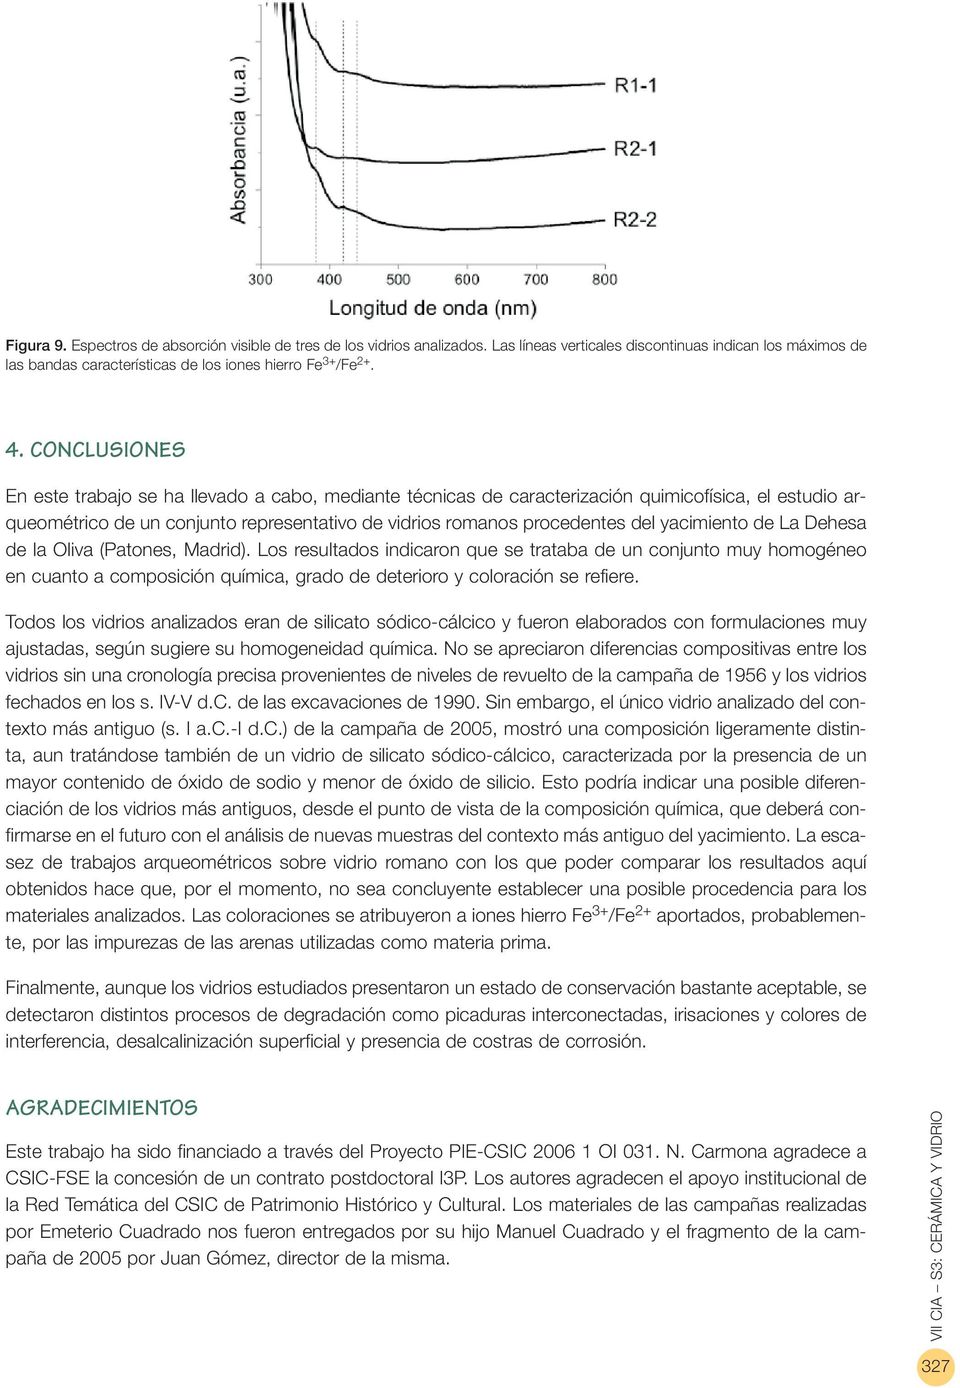 yacimiento de La Dehesa de la Oliva (Patones, Madrid). Los resultados indicaron que se trataba de un conjunto muy homogéneo en cuanto a composición química, grado de deterioro y coloración se refiere.